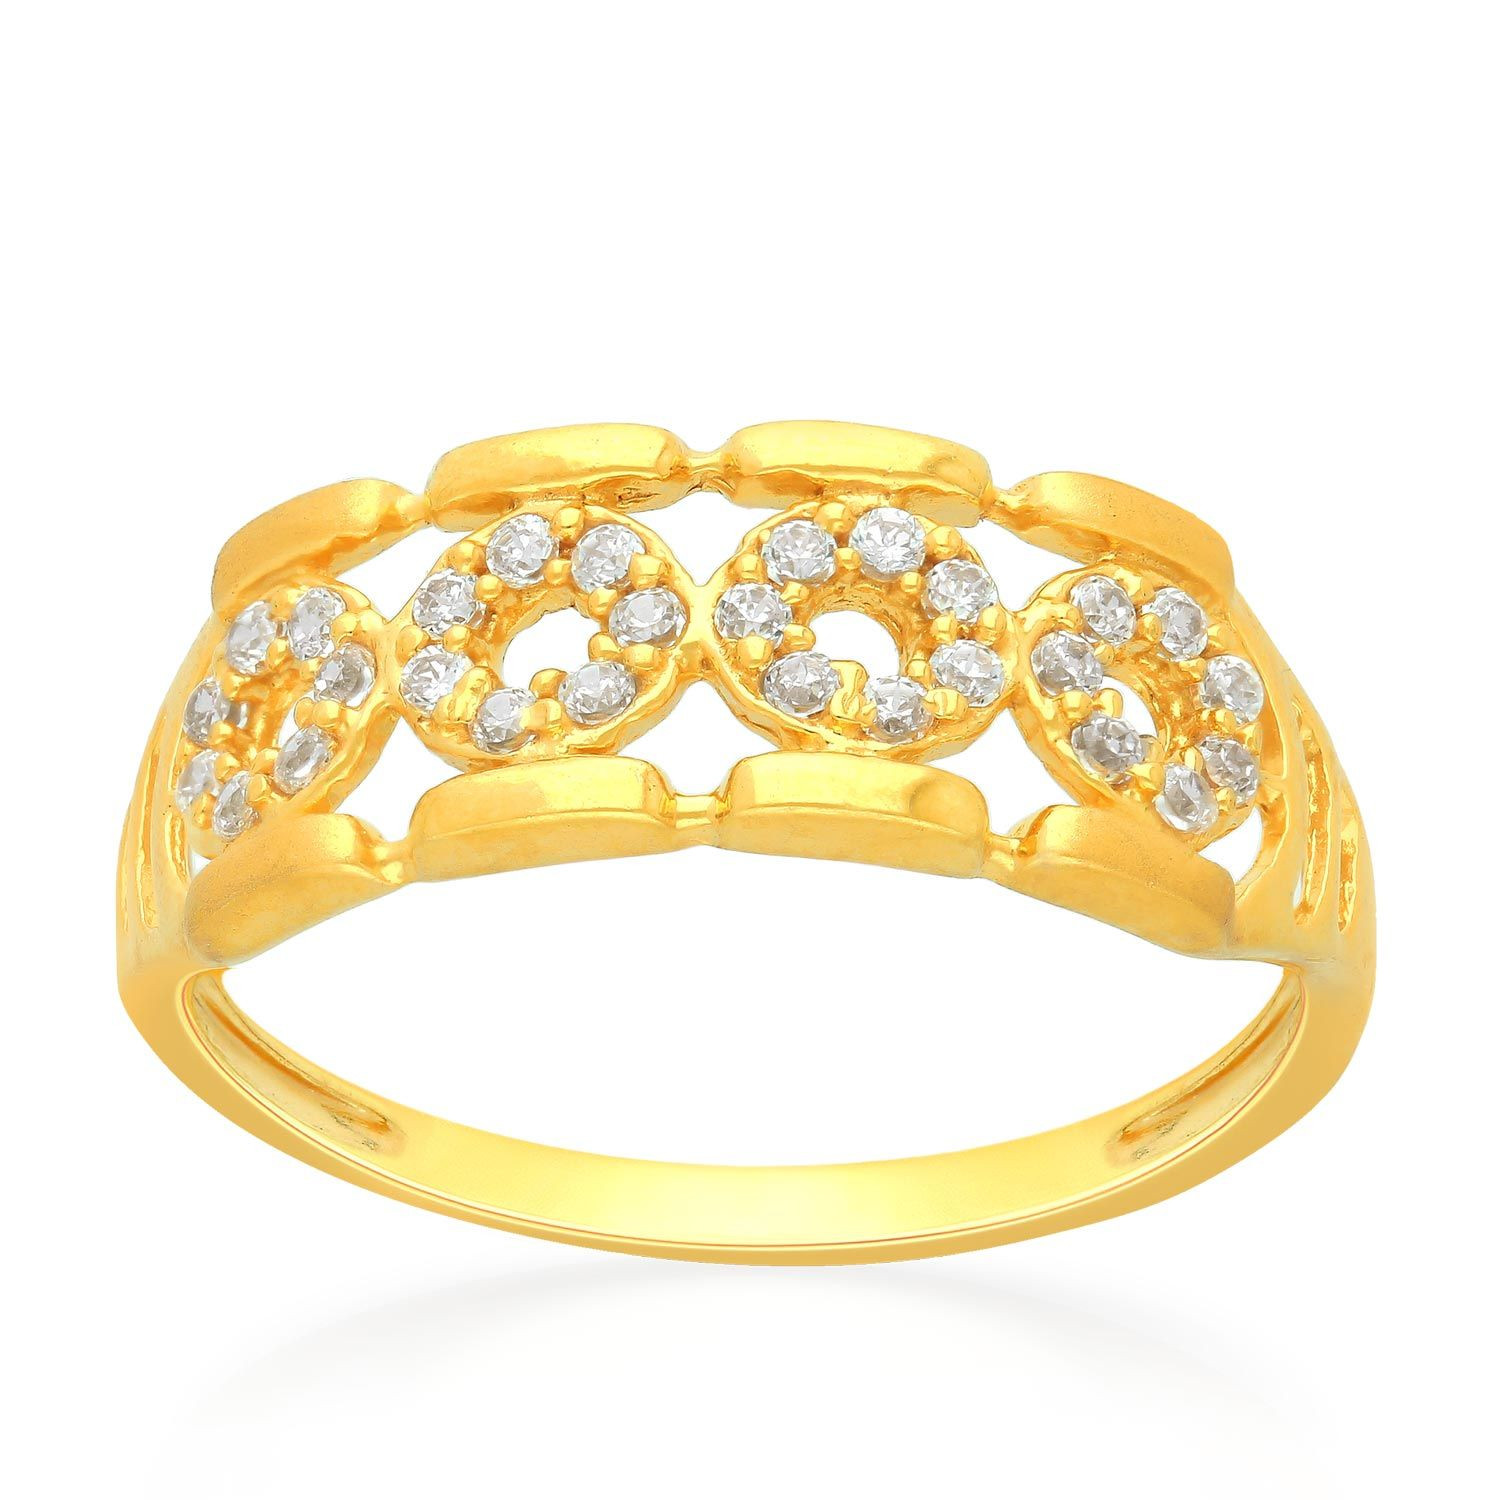 Malabar Gold Ring FRGEDZRURGZ686